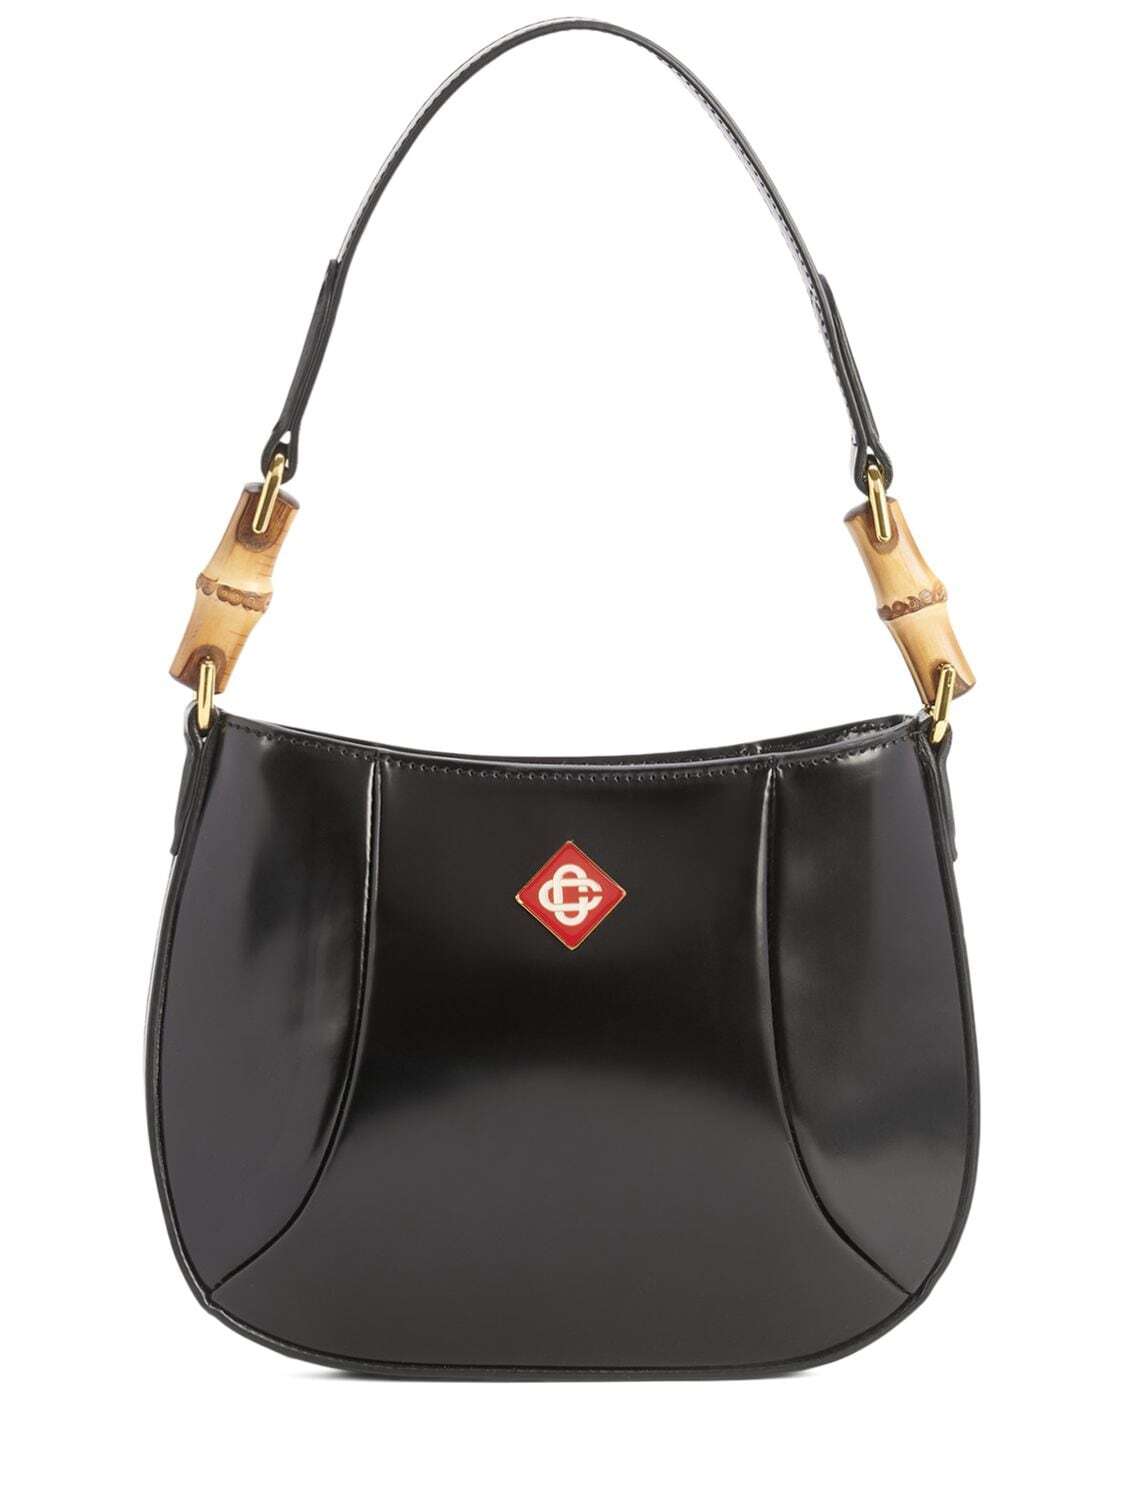 CASABLANCA Leather Shoulder Bag in black